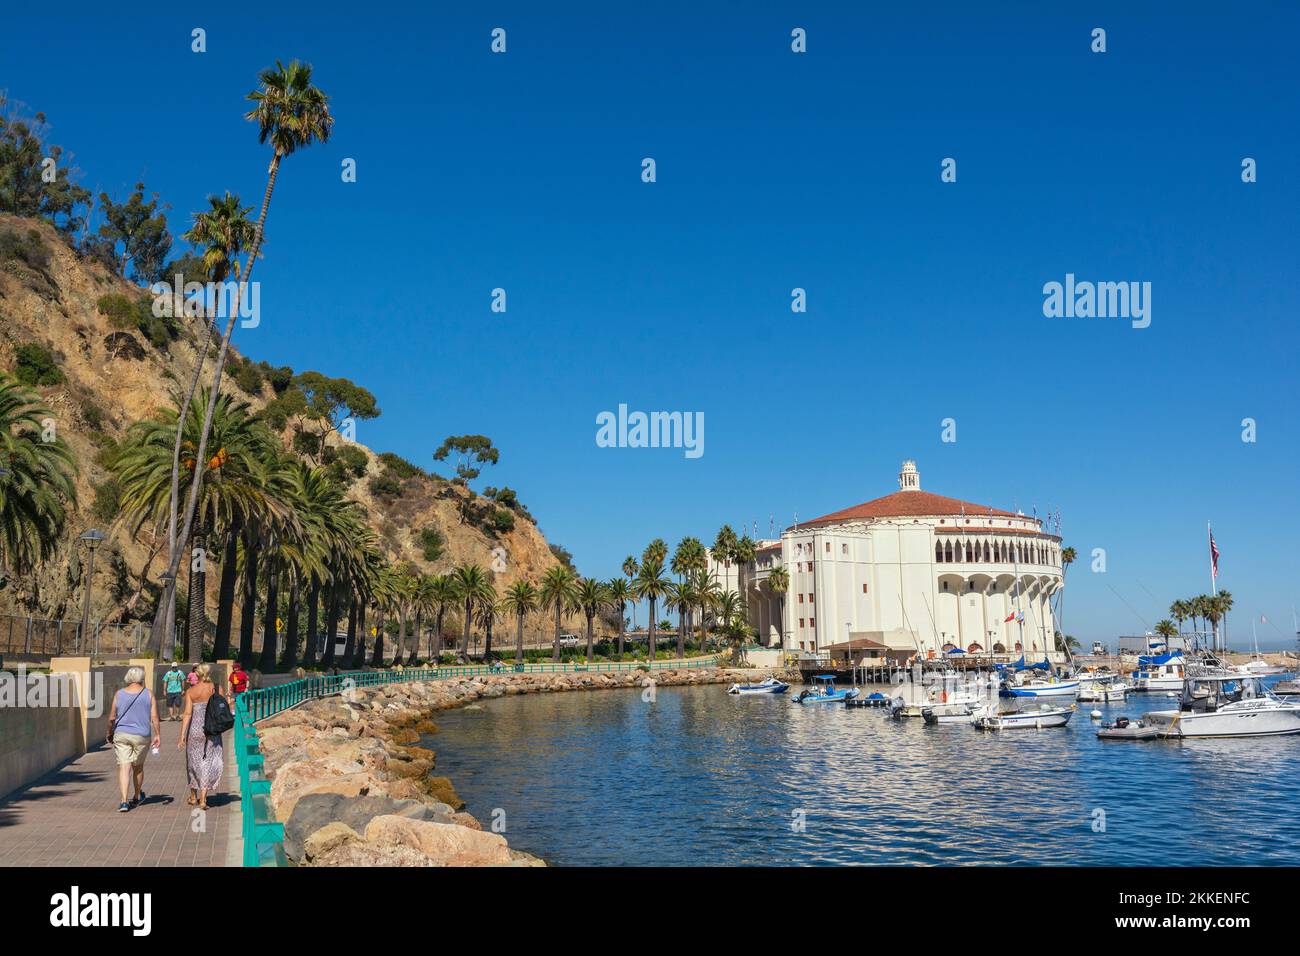 California, Catalina Island, Via Casino, Avalon Harbor, Casino Stock Photo